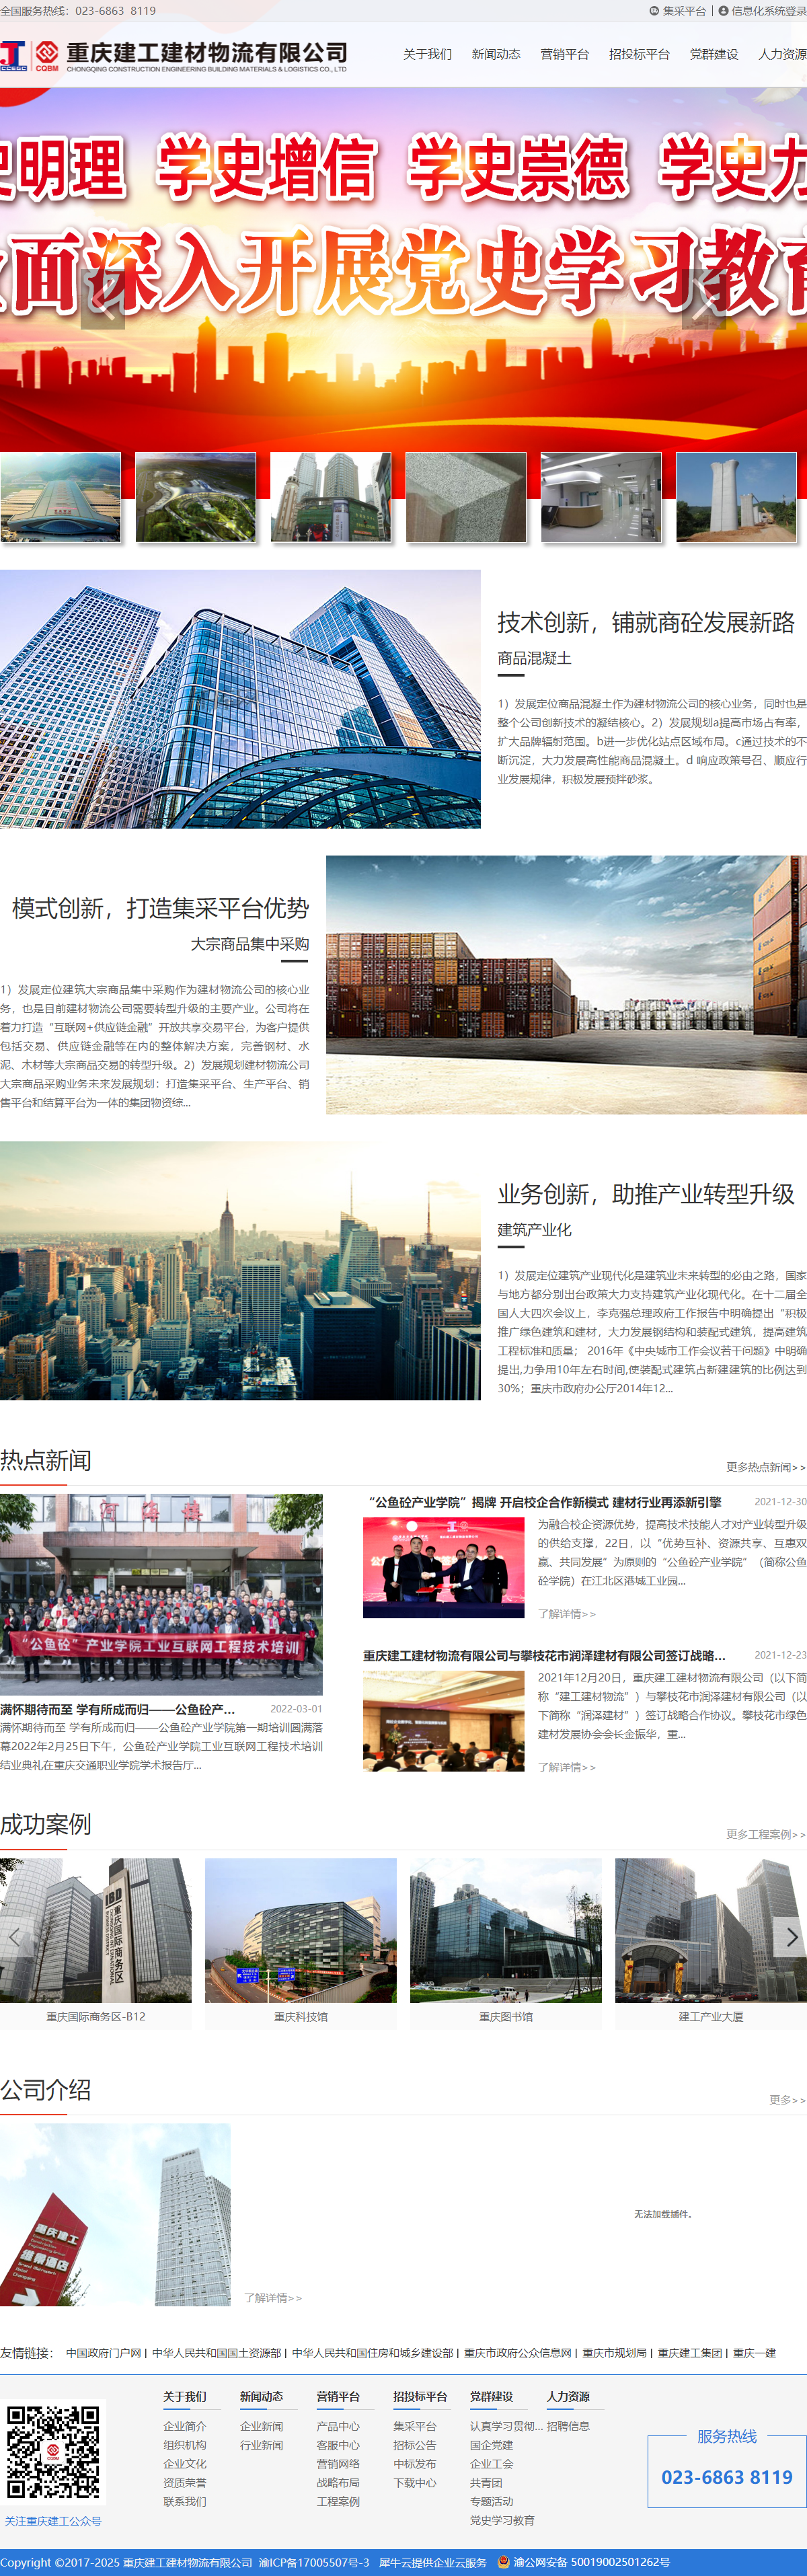 重庆建工建材物流有限公司网站案例